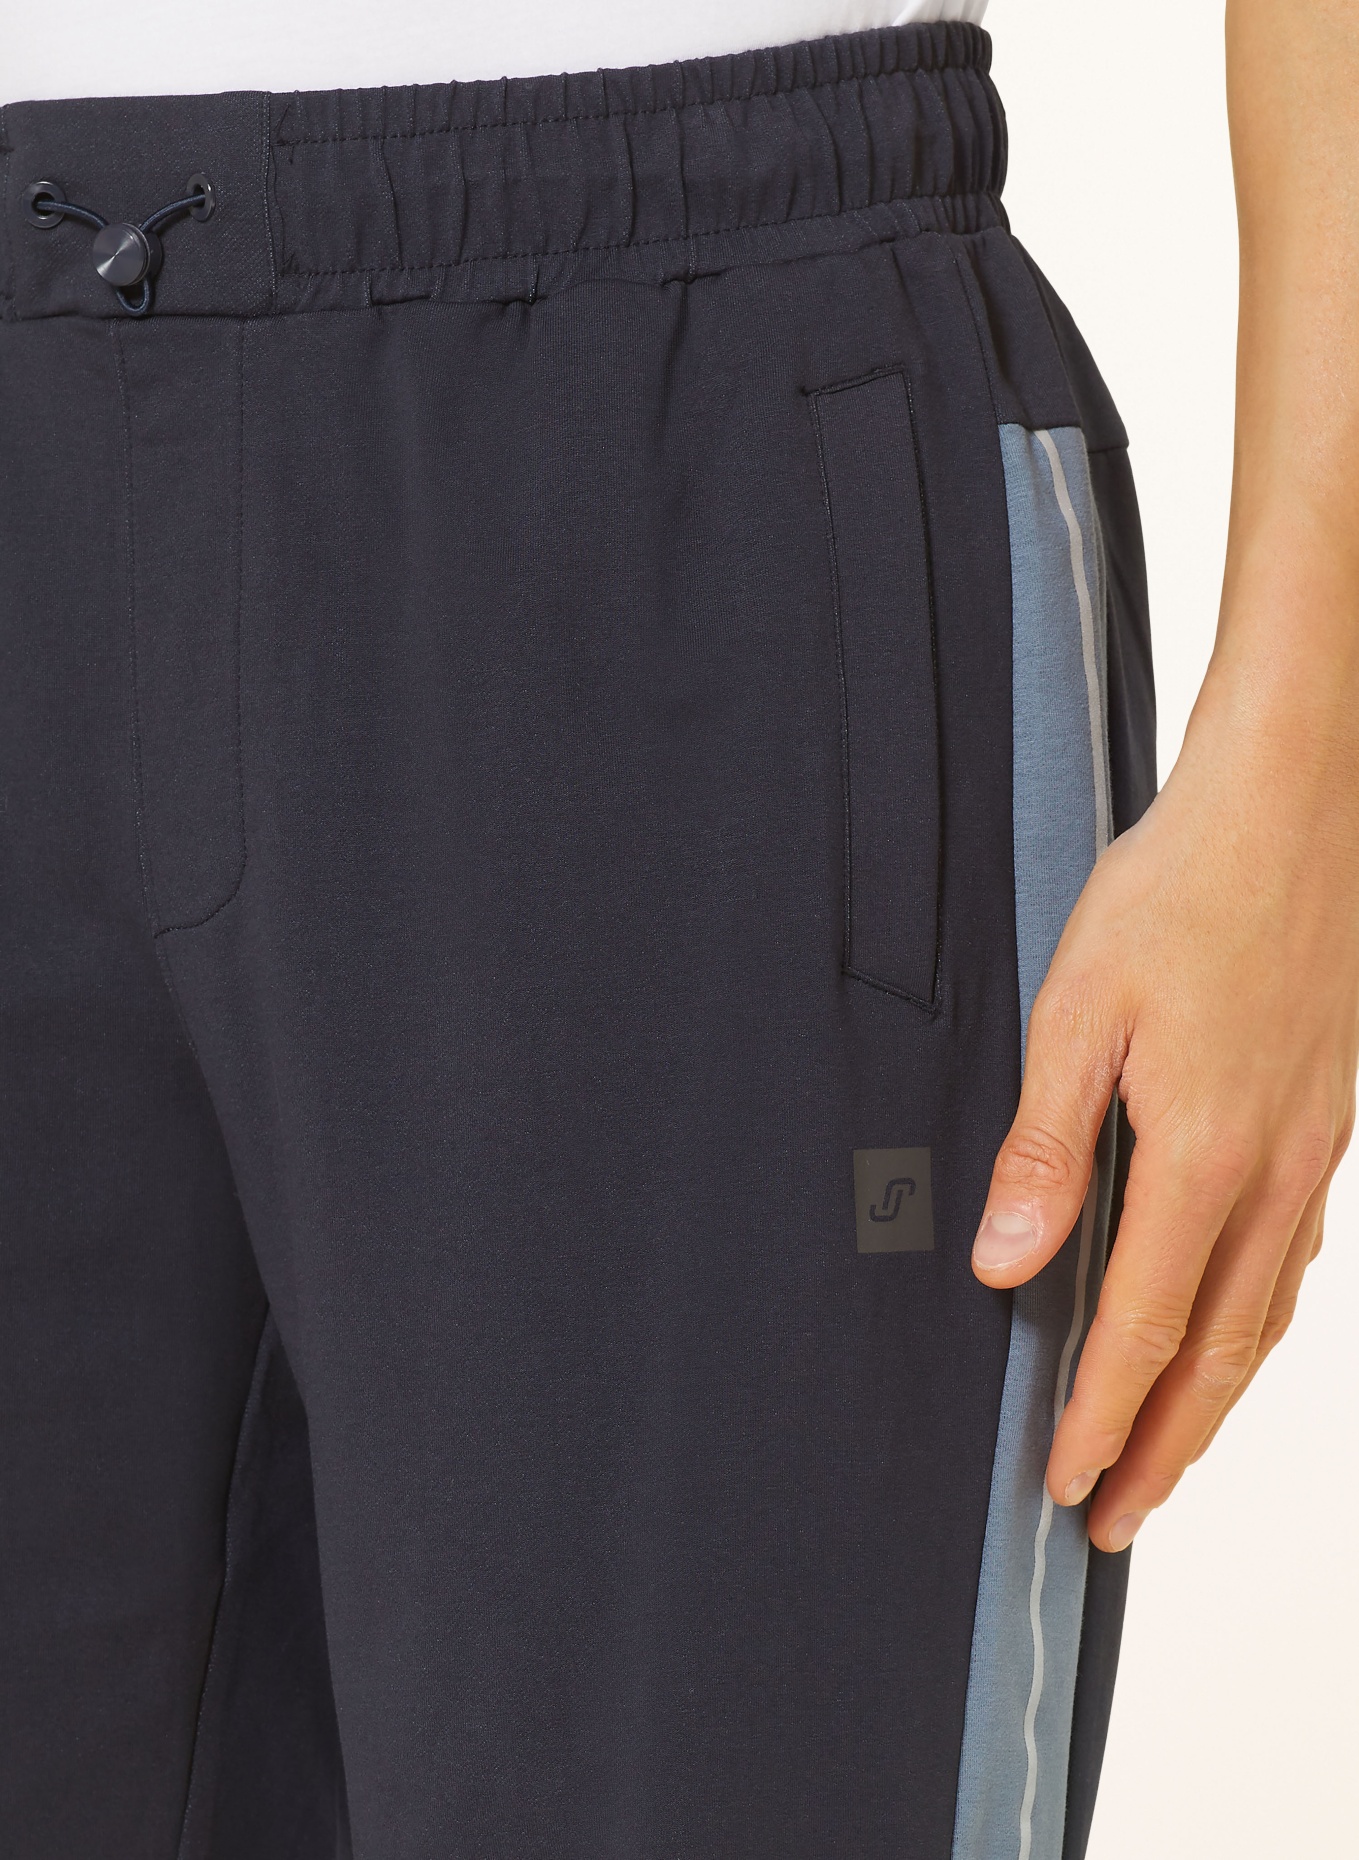 JOY sportswear Sweat shorts JESKO regular fit, Color: DARK BLUE (Image 6)